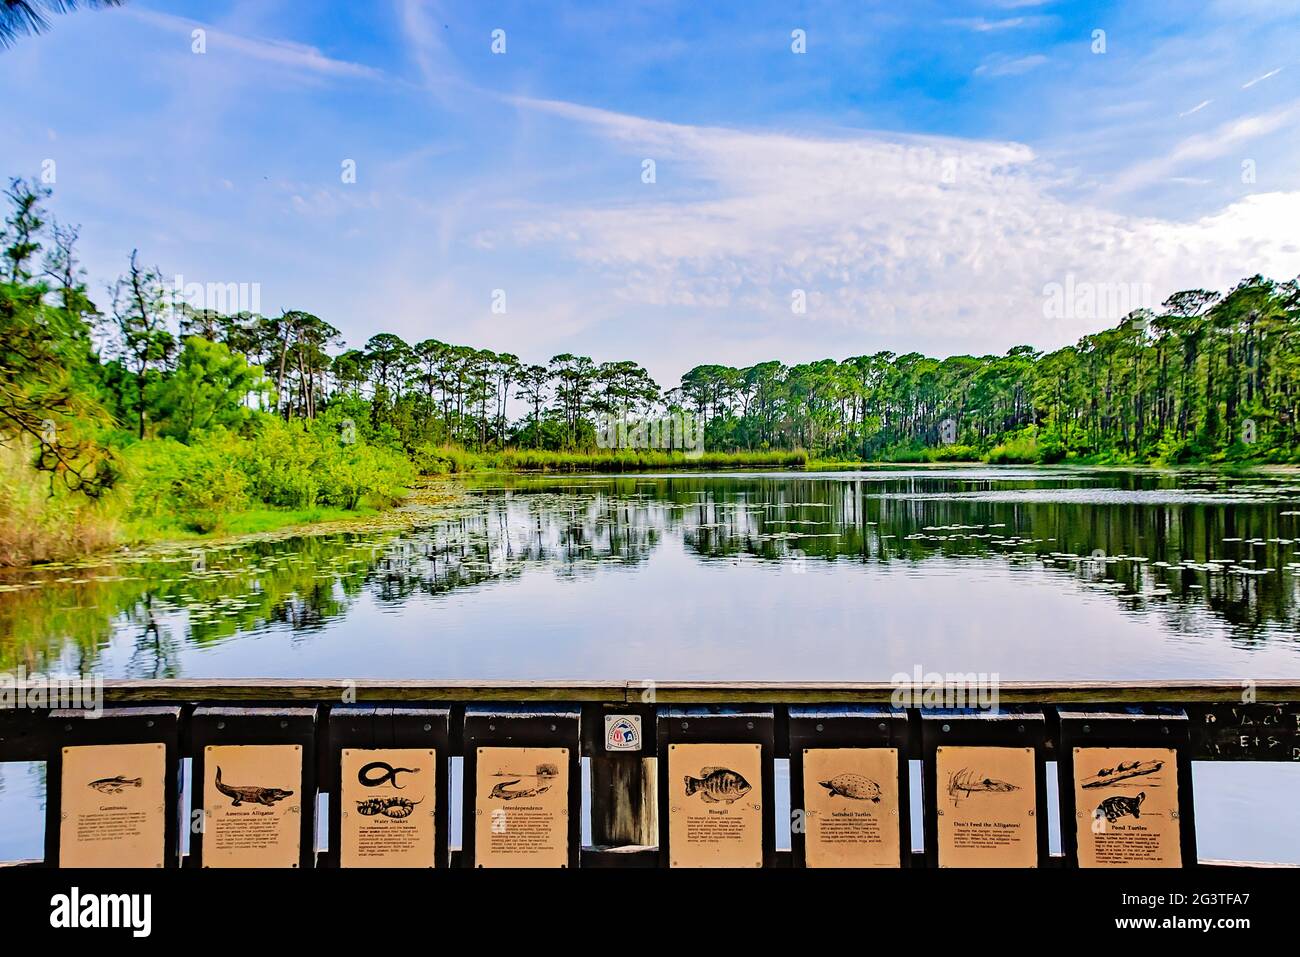 Las señales ilustran los tipos de vida silvestre que se encuentran en y alrededor del lago Gaillard en el Santuario de Aves Audubon, 17 de junio de 2021, en Dauphin Island, Alabama. Foto de stock